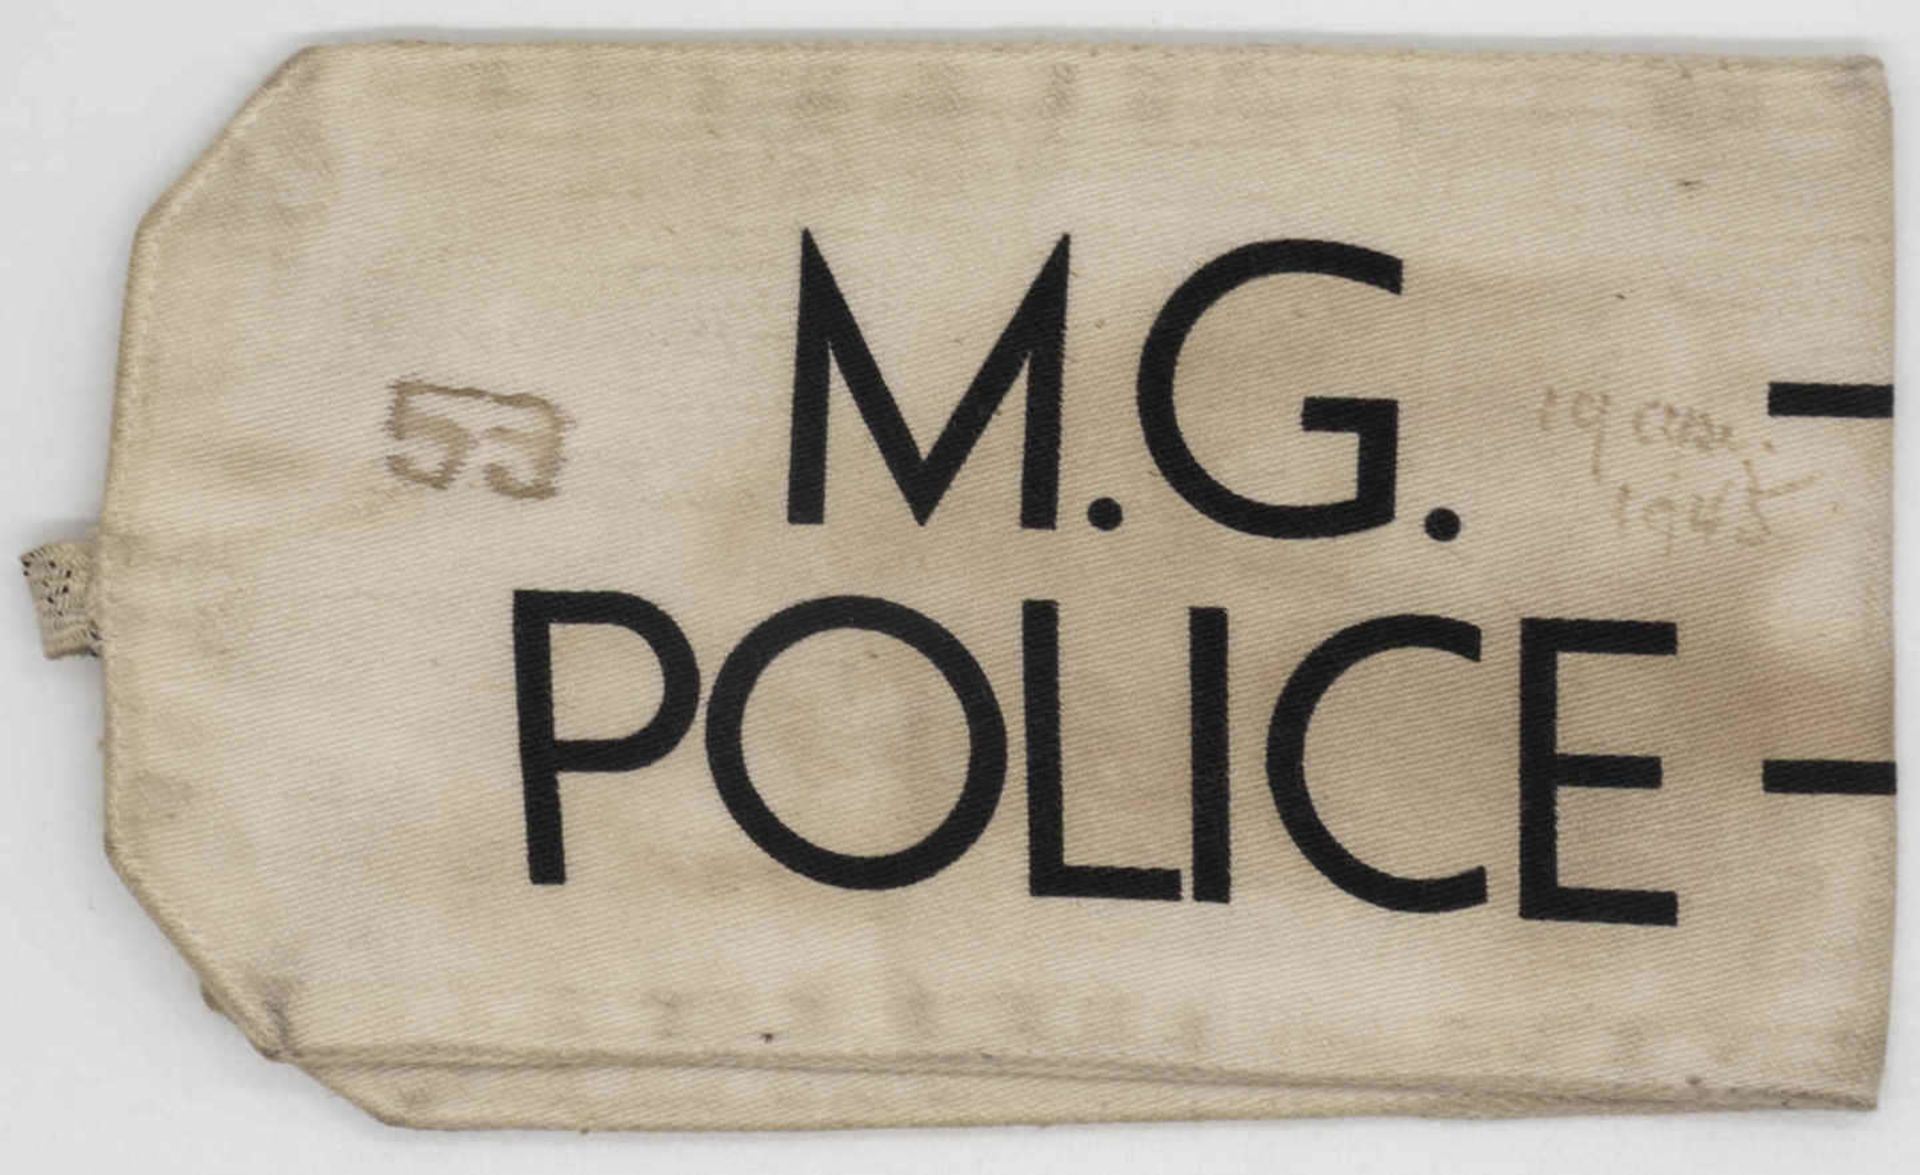 Armbinde Deutschland amerikanische Zone Hilfspolizei: M.G - Police - M.R. Polizei - 53. Ca. 1946.